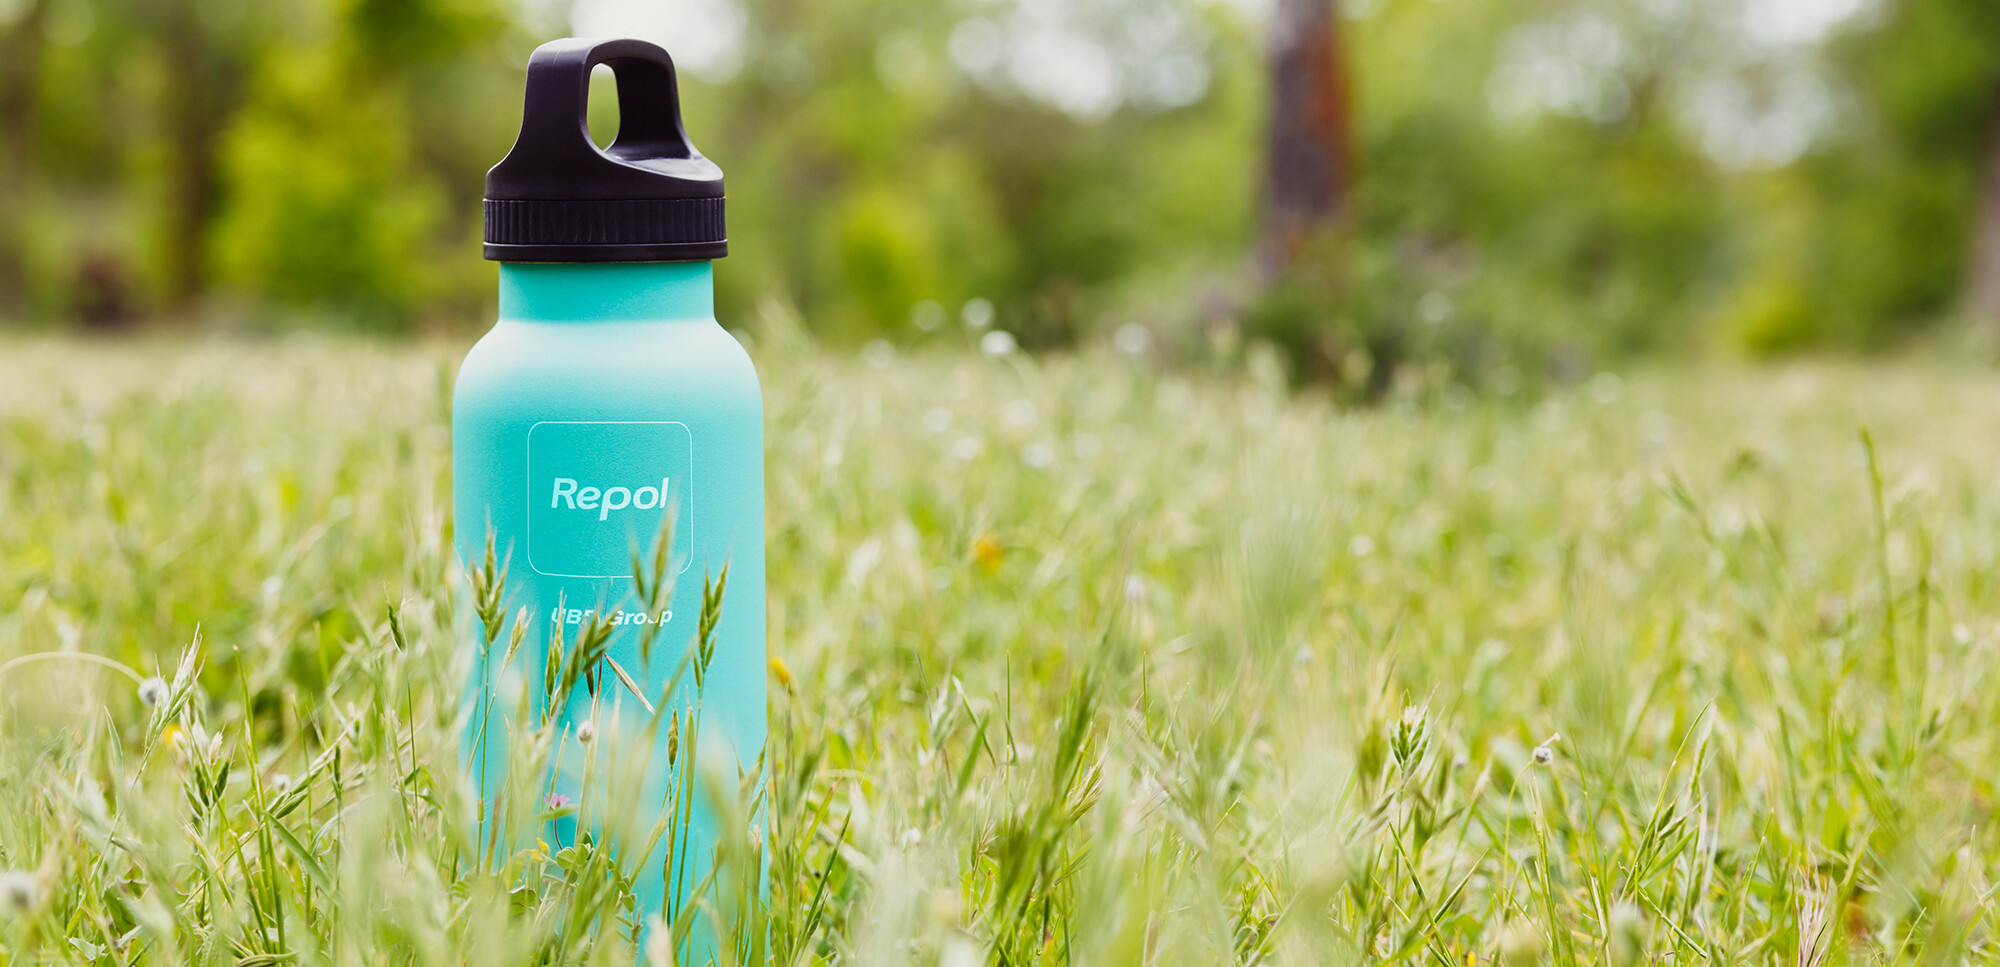 Flasche mit Repol-Logo auf einer grünen Wiese